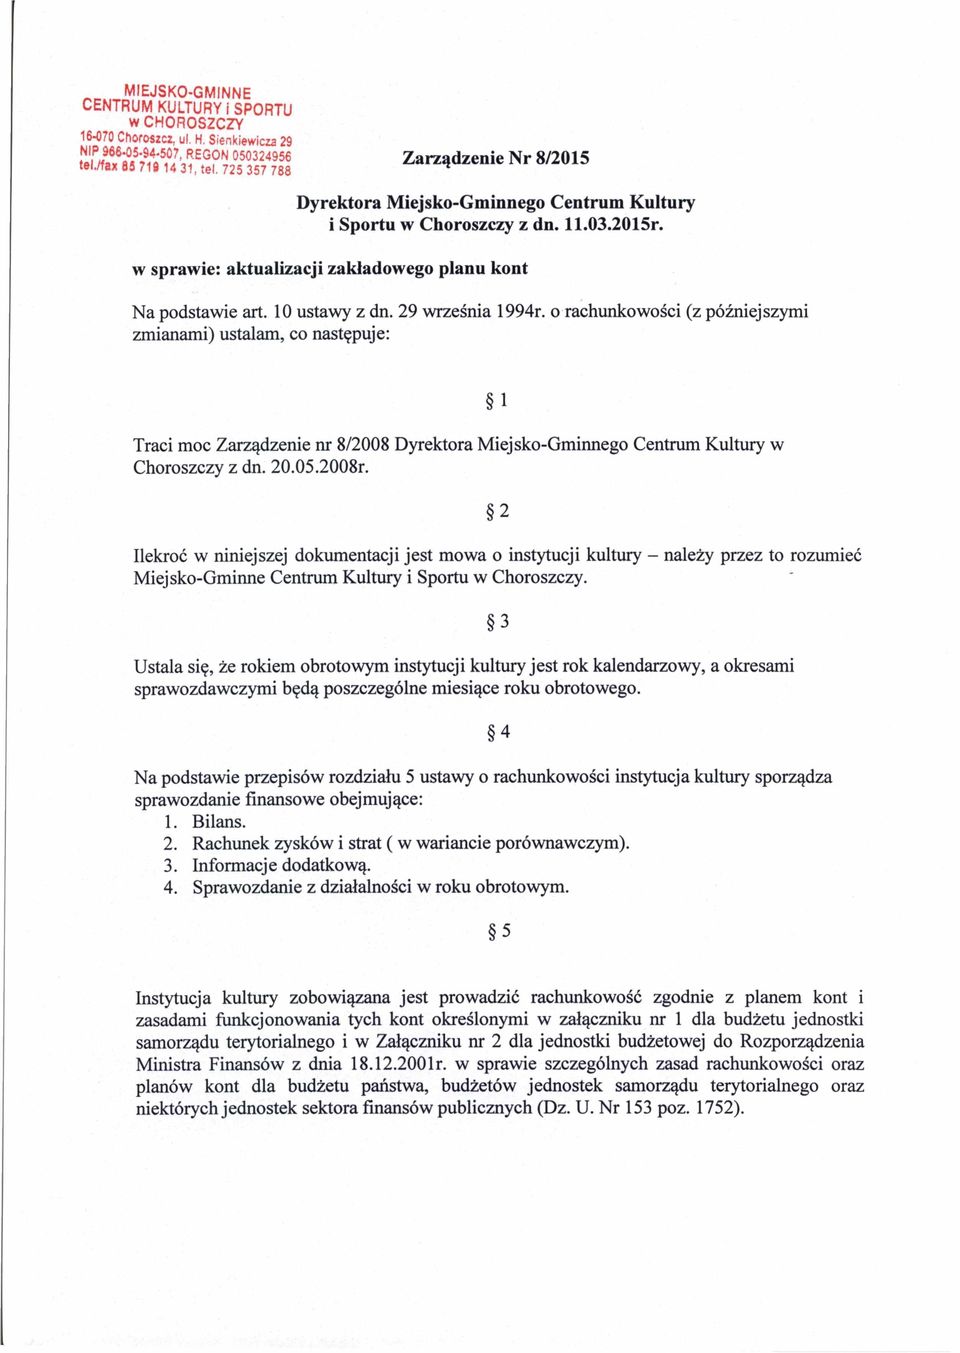 29 września 1994r. o rachunkowości (z późniejszymi zmianami) ustalam, co następuje: Traci moc Zarządzenie nr 8/2008 Dyrektora Miejsko-Gminnego Centrum Kultury w Choroszczy z dn. 20.05.2008r.